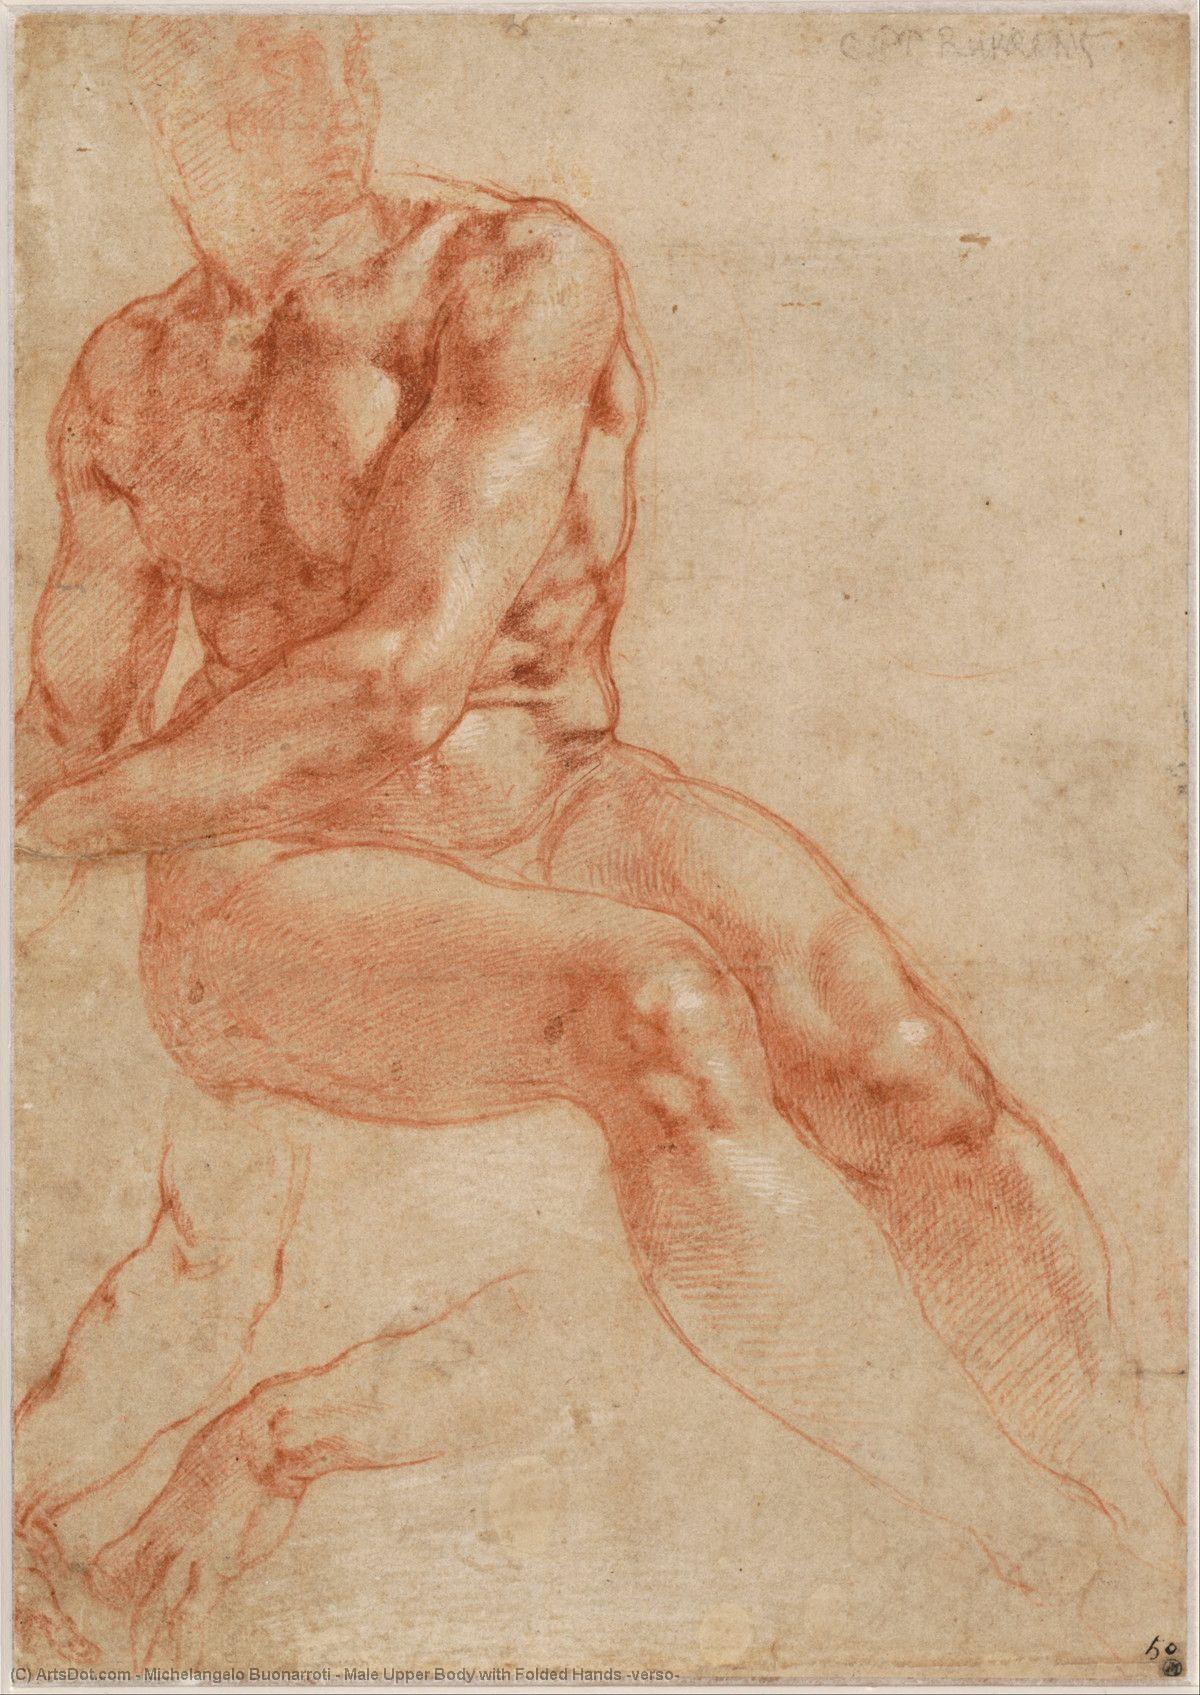 Compra Riproduzioni D'arte Del Museo Corpo superiore maschio con mani piegate (verso), 1511 di Michelangelo Buonarroti (1475-1564, Italy) | ArtsDot.com